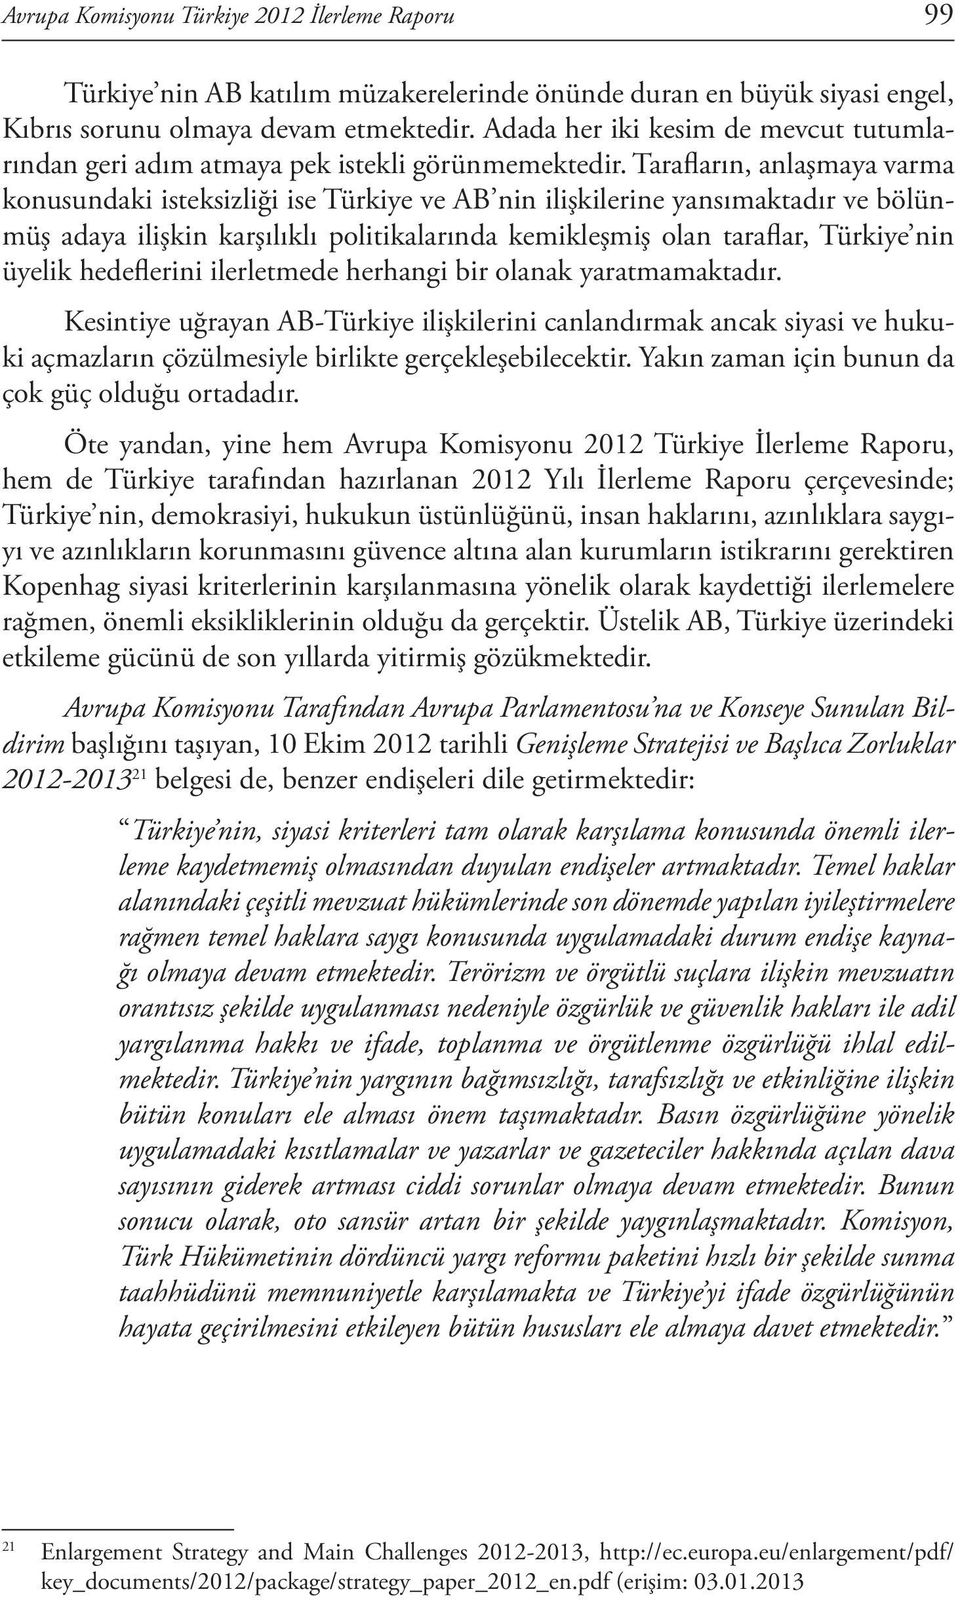 Tarafların, anlaşmaya varma konusundaki isteksizliği ise Türkiye ve AB nin ilişkilerine yansımaktadır ve bölünmüş adaya ilişkin karşılıklı politikalarında kemikleşmiş olan taraflar, Türkiye nin